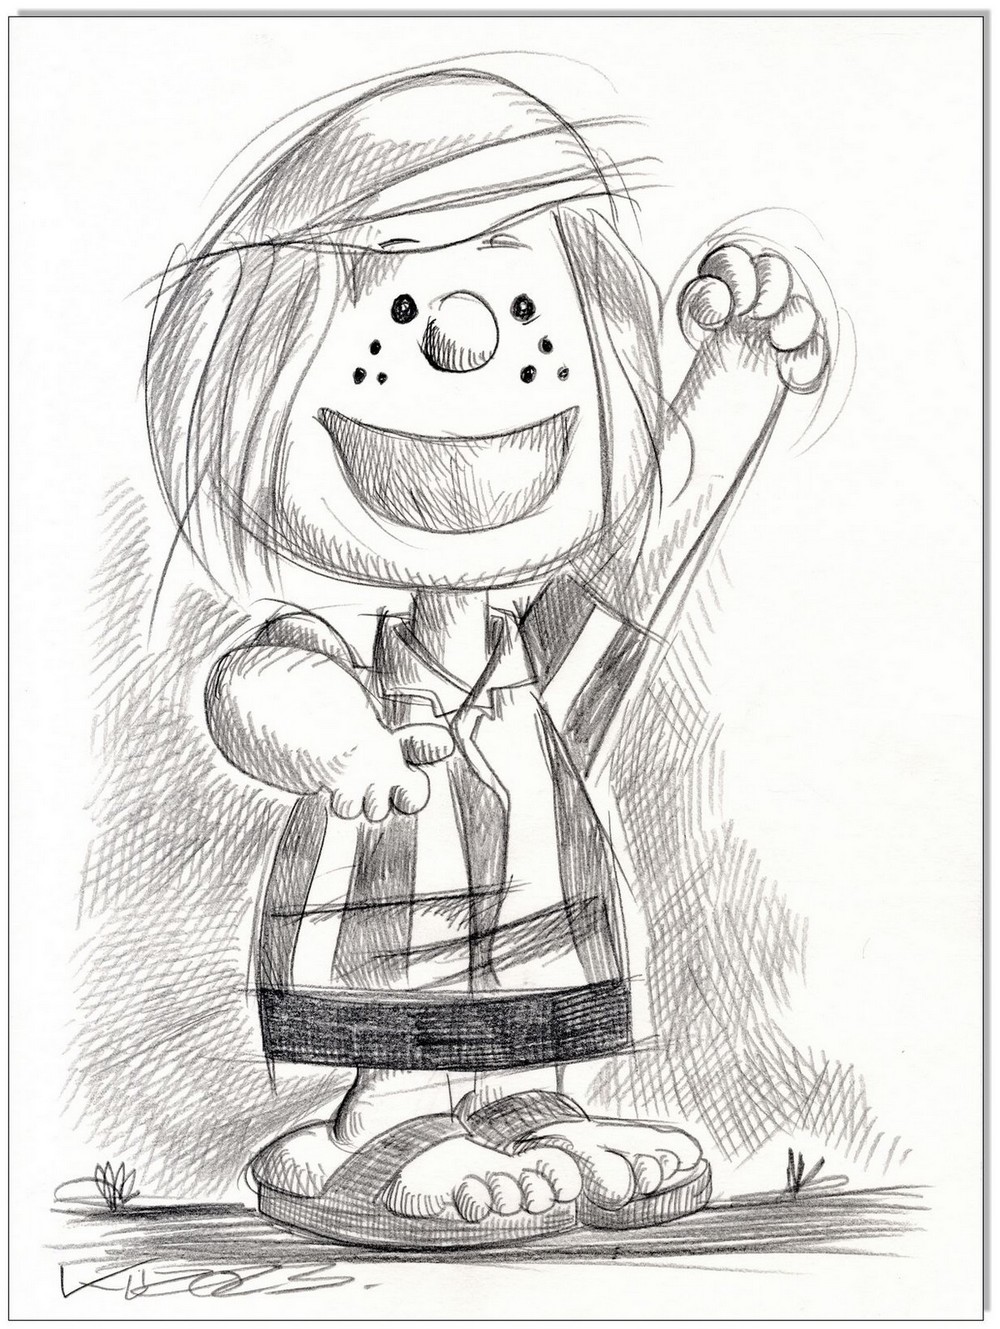 PEANUTS Peppermint Patty - 24 x 32 cm